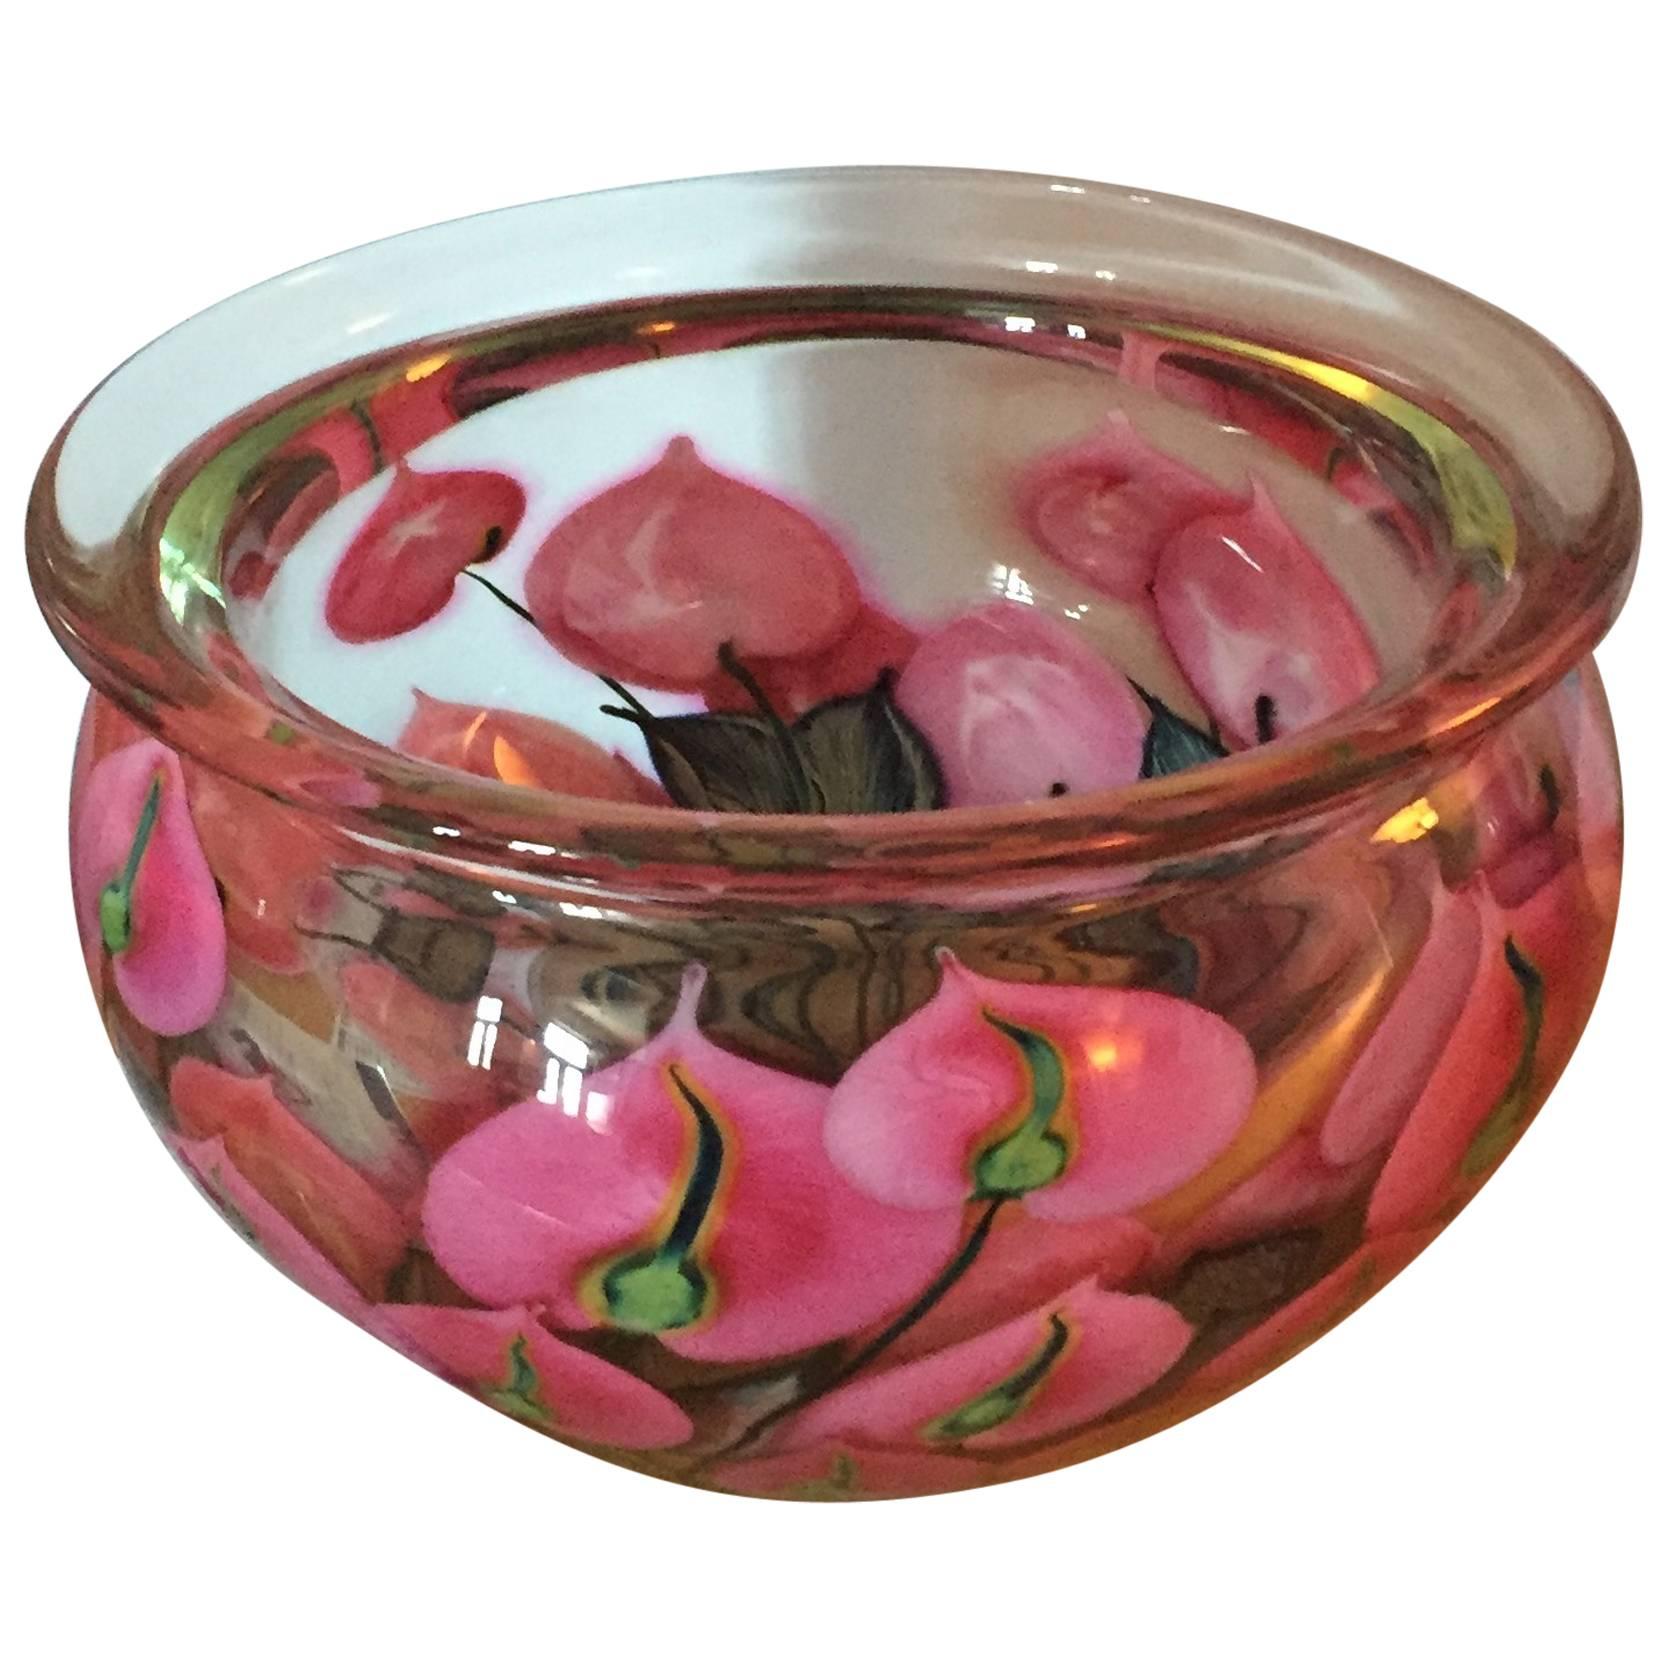 Art glass bowl by David Lotton